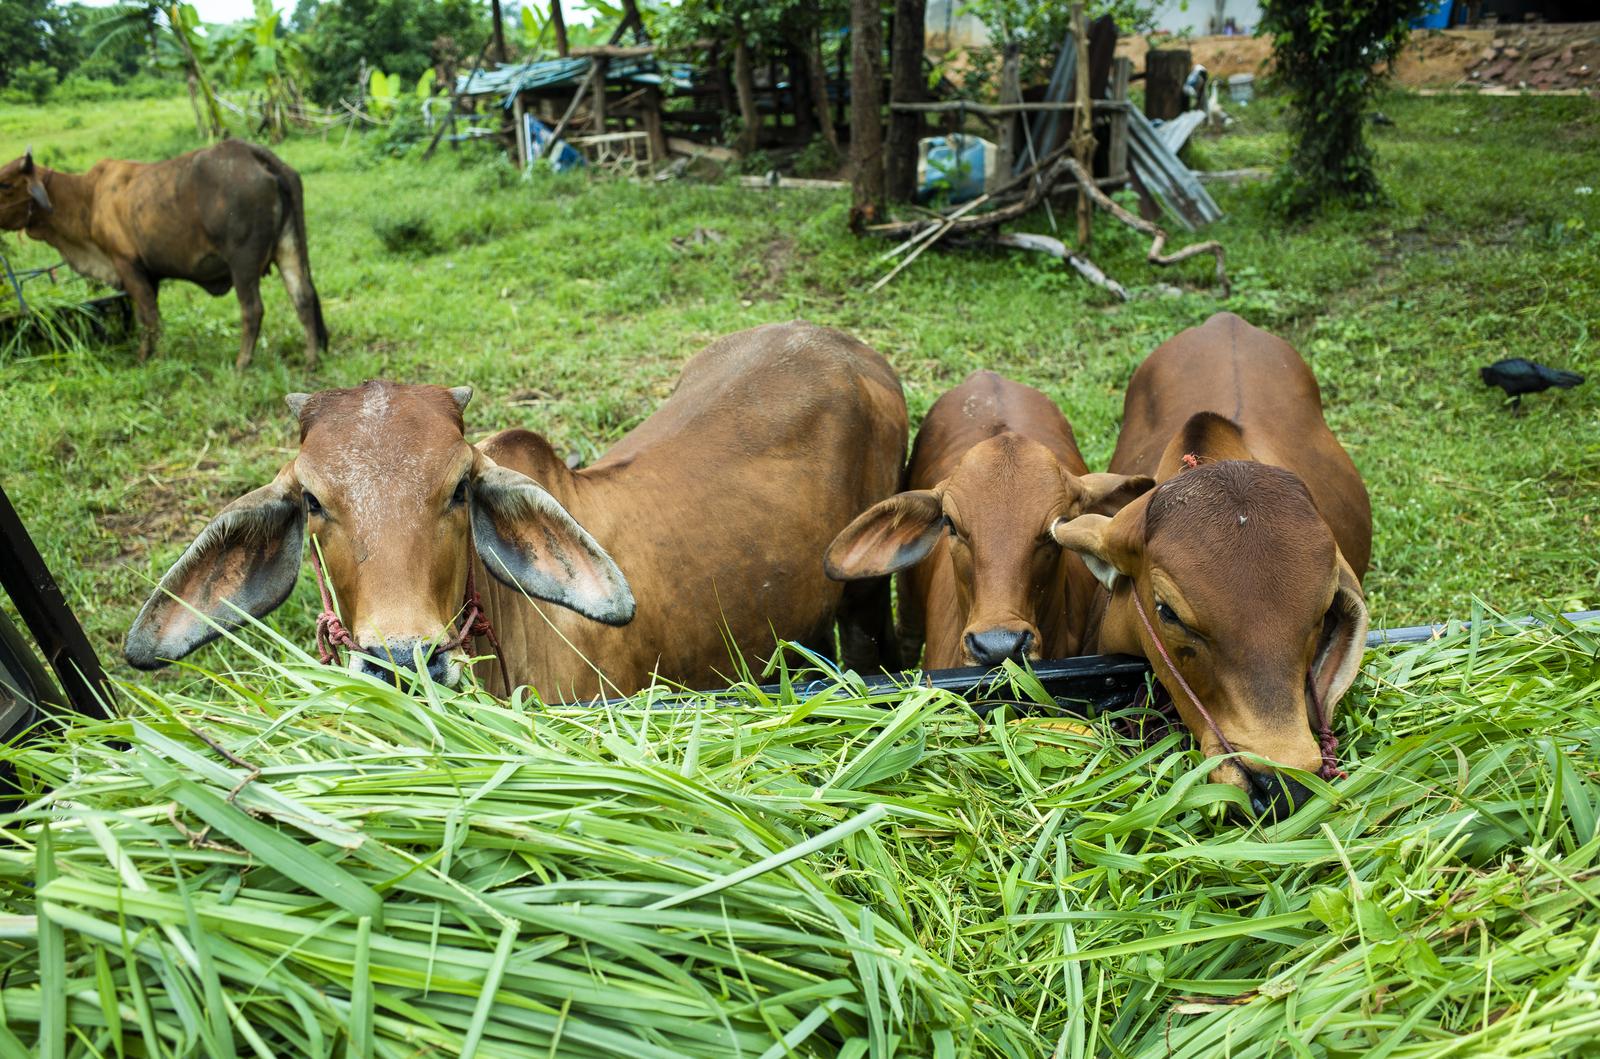 KREEGIMÄE TALU FIE - Raising of other cattle and buffaloes in Lääne-Viru county